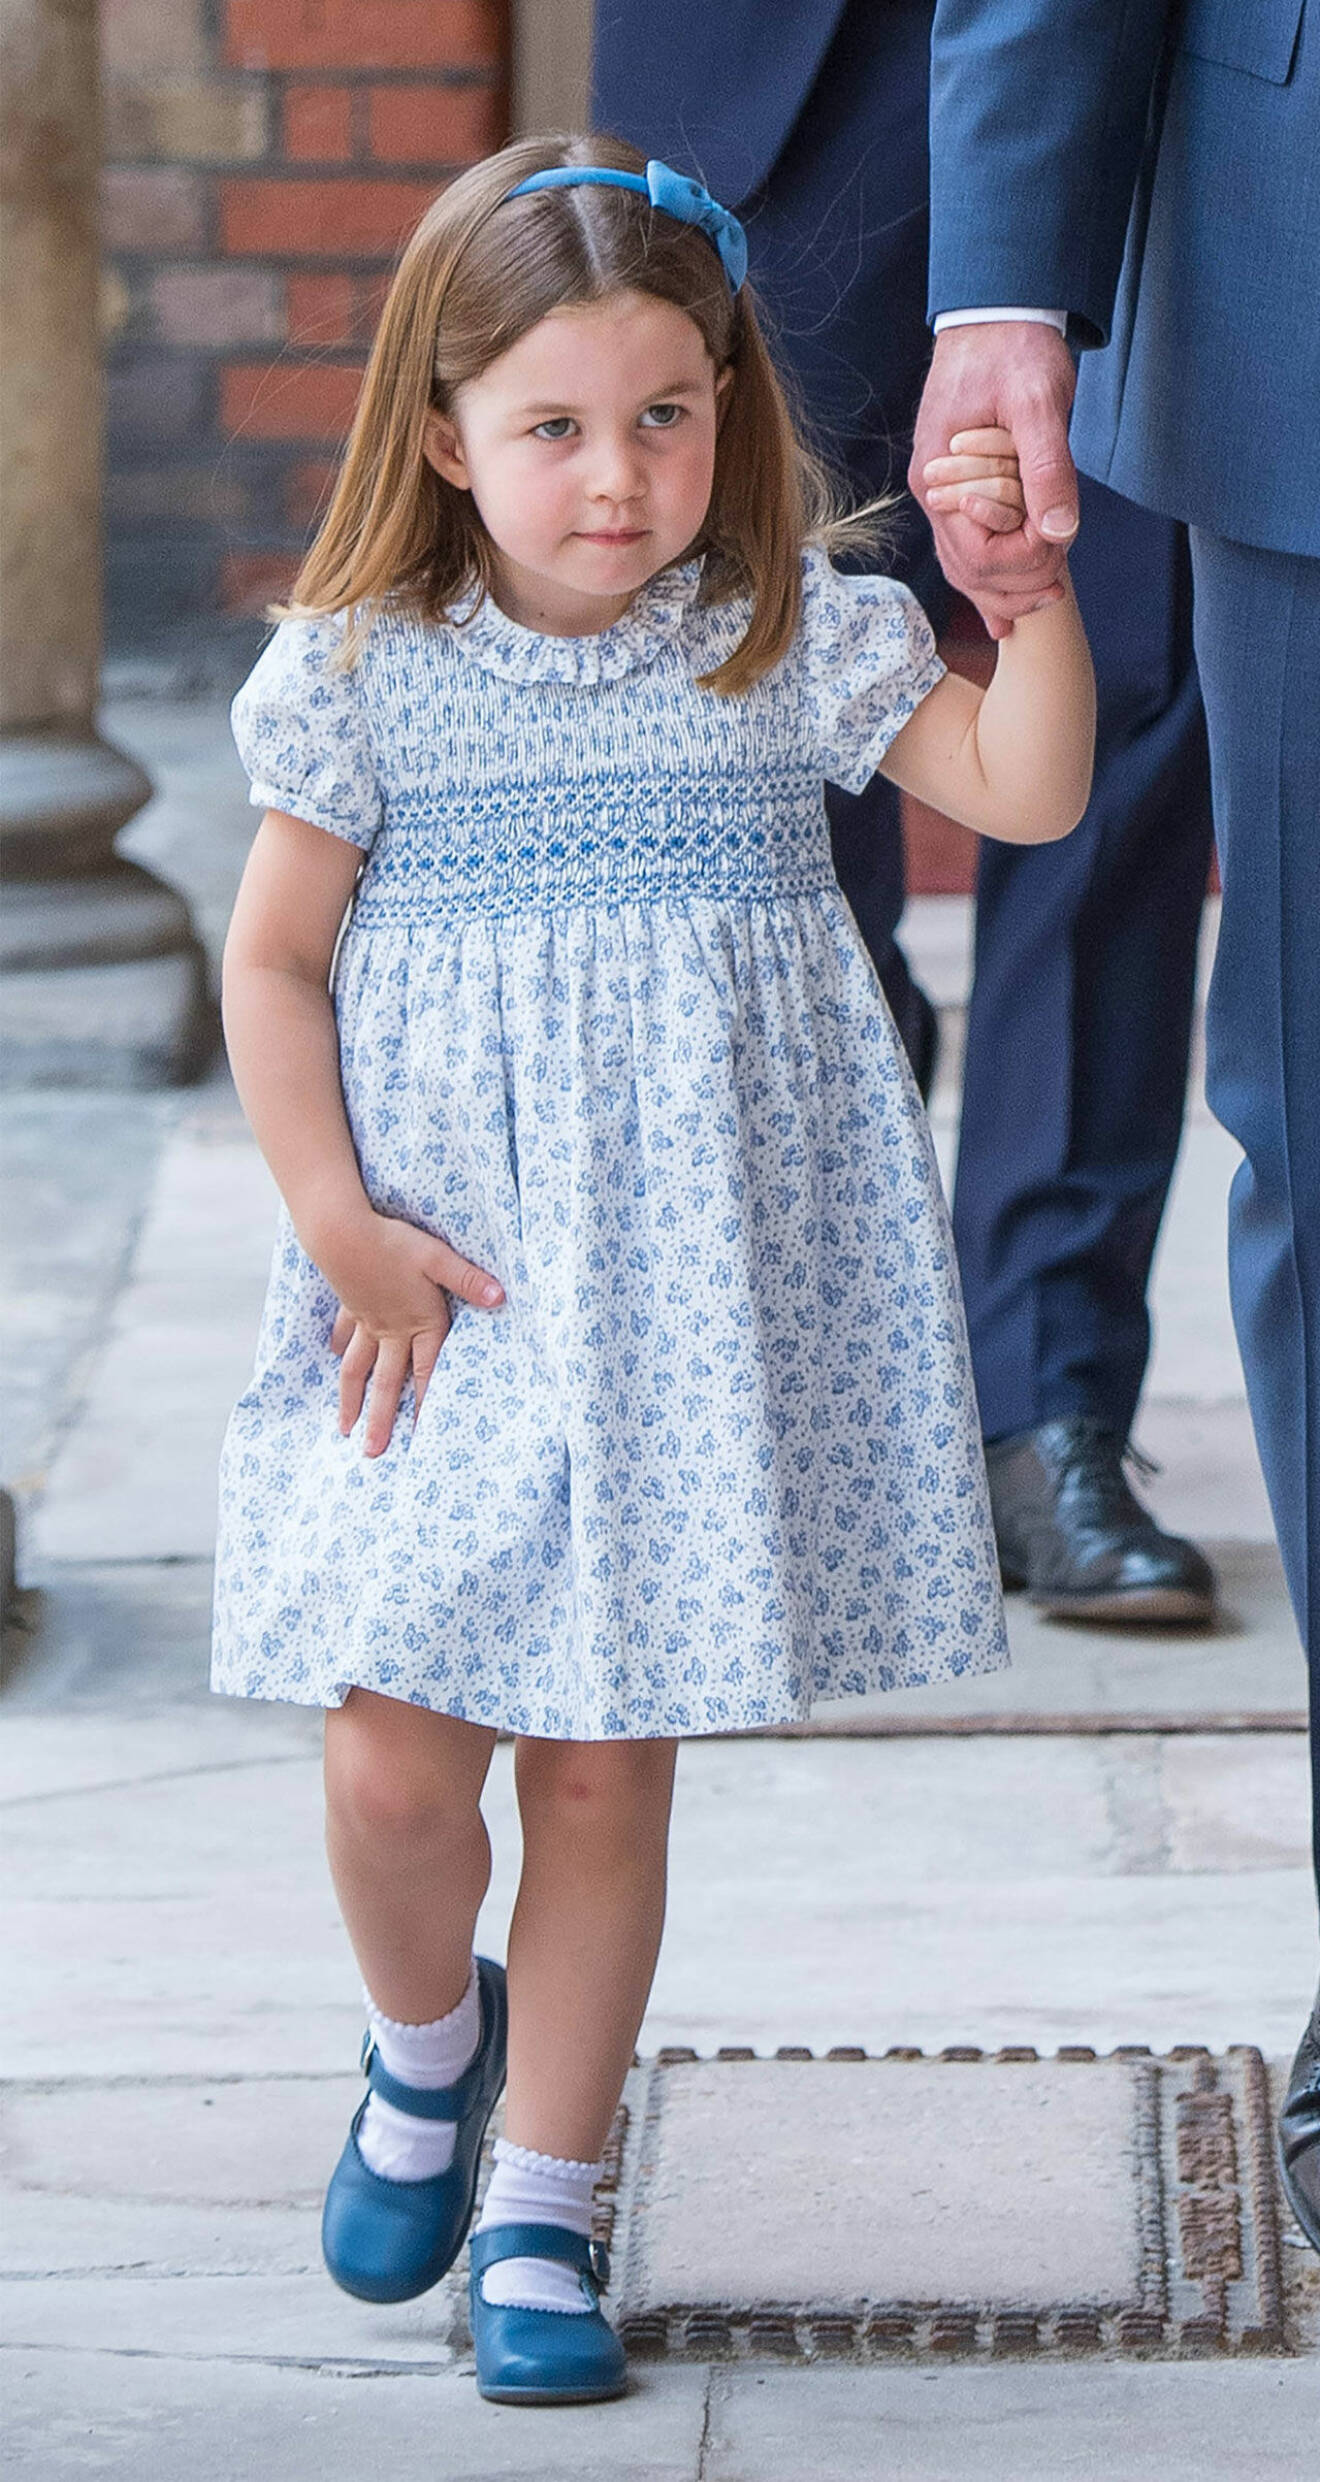 Prinsessan Charlotte i blått.